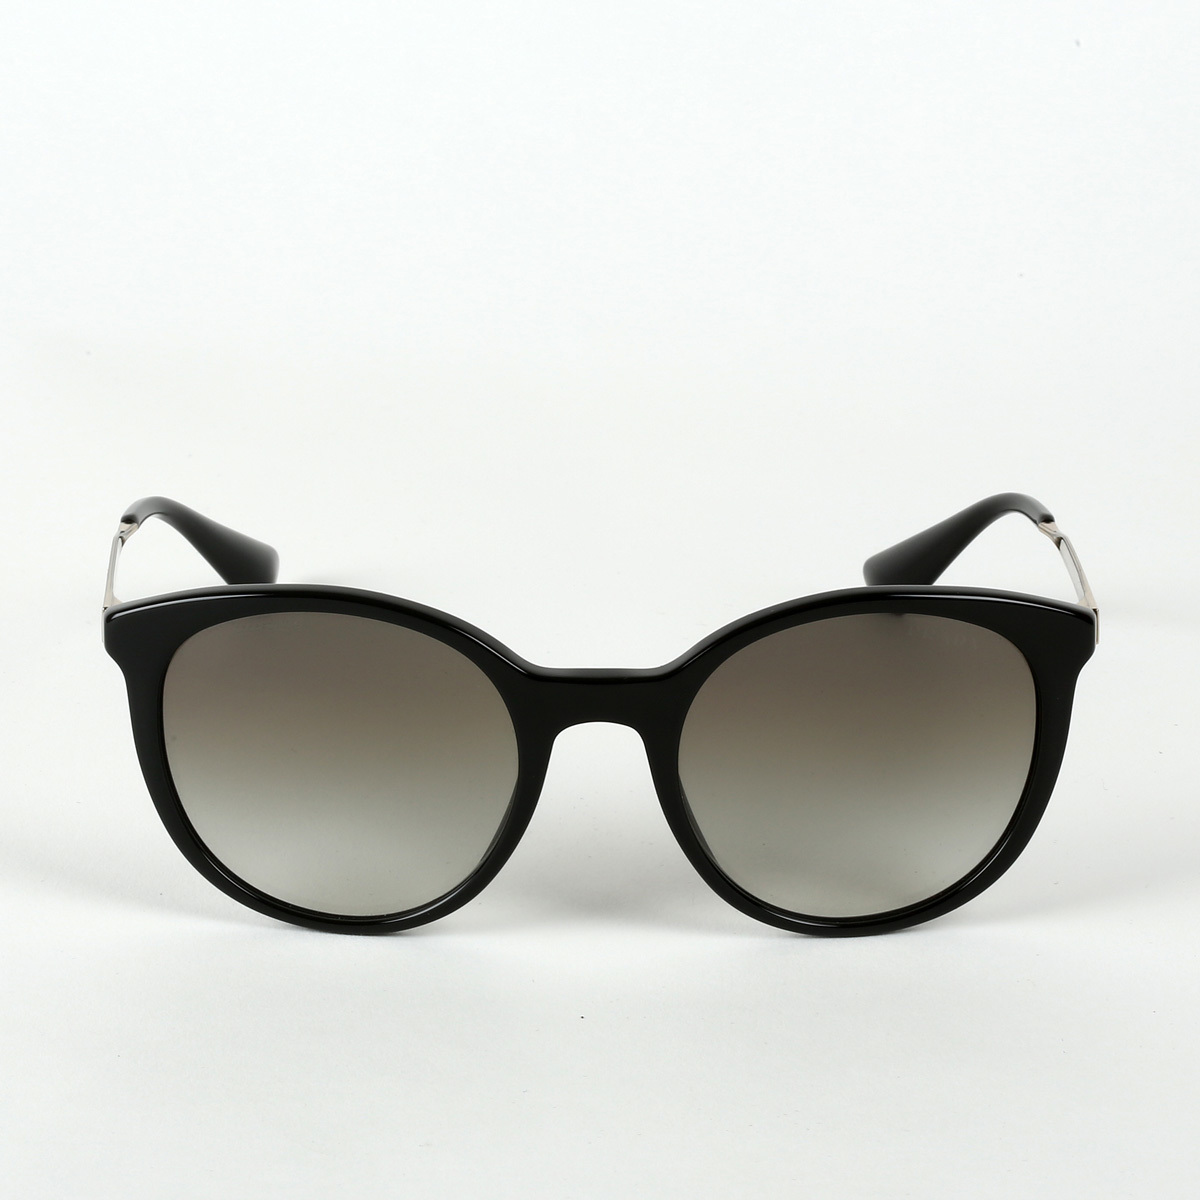 Prada Black Sunglasses with Grey Lenses, SPR 17S 1AB-OA7